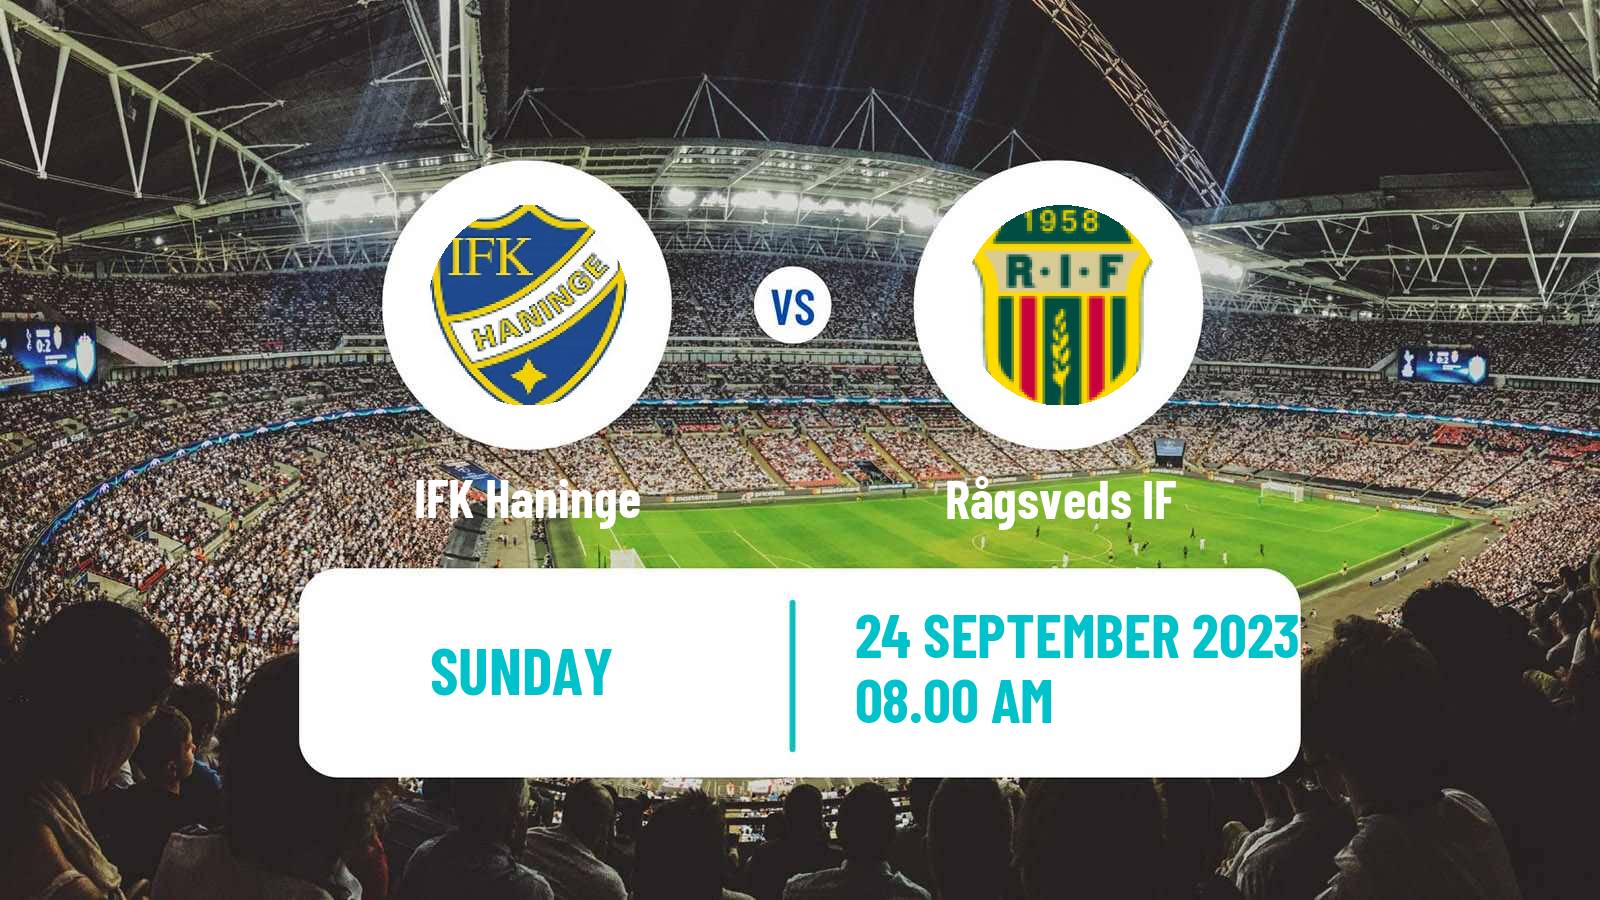 Soccer Swedish Division 2 - Södra Svealand Haninge - Rågsved